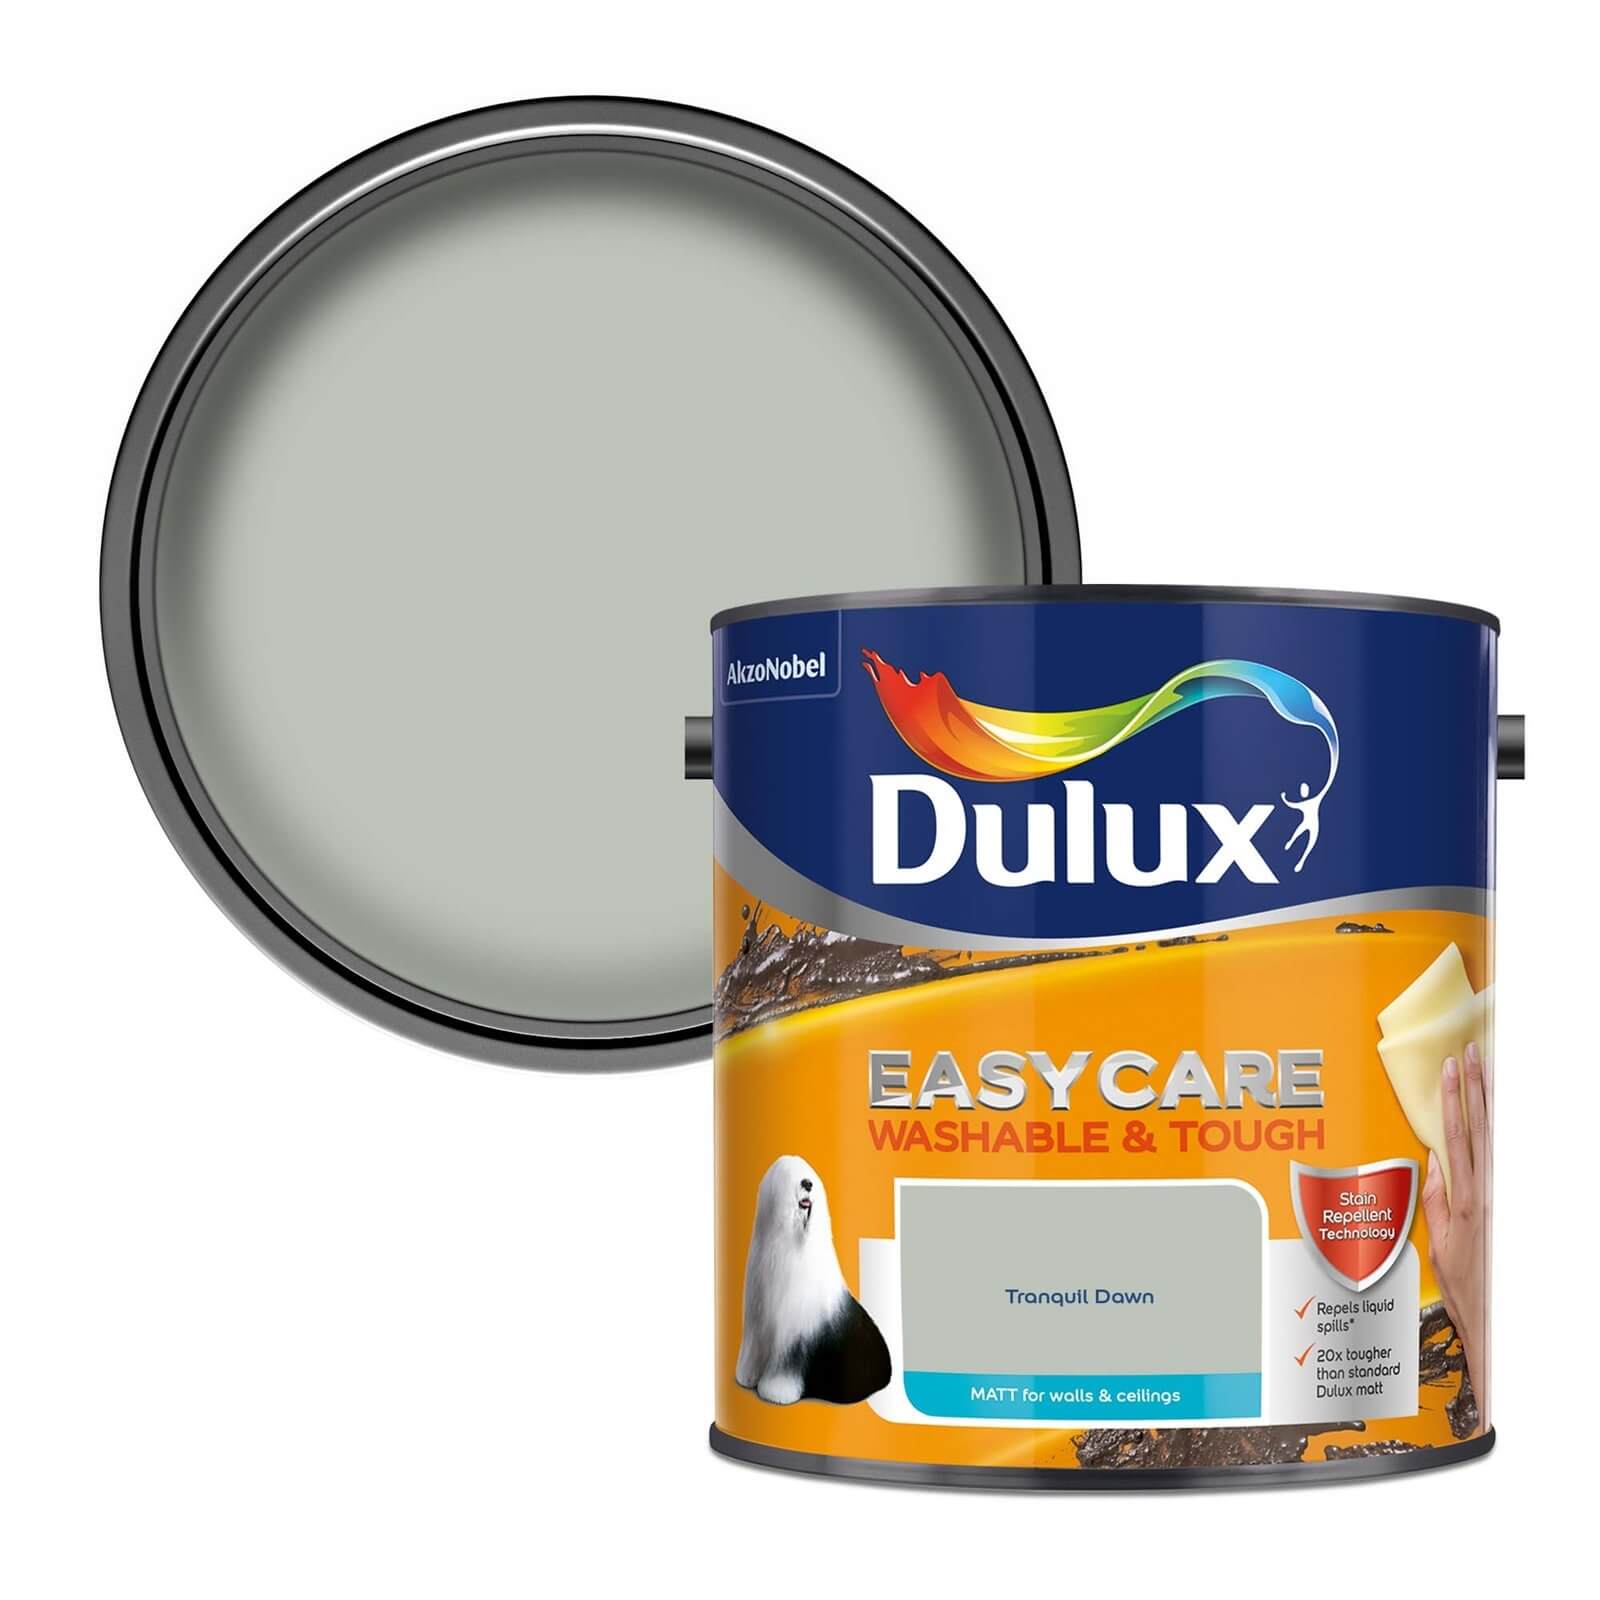 Dulux Easycare Washable & Tough Matt Paint Tranquil Dawn - 2.5L